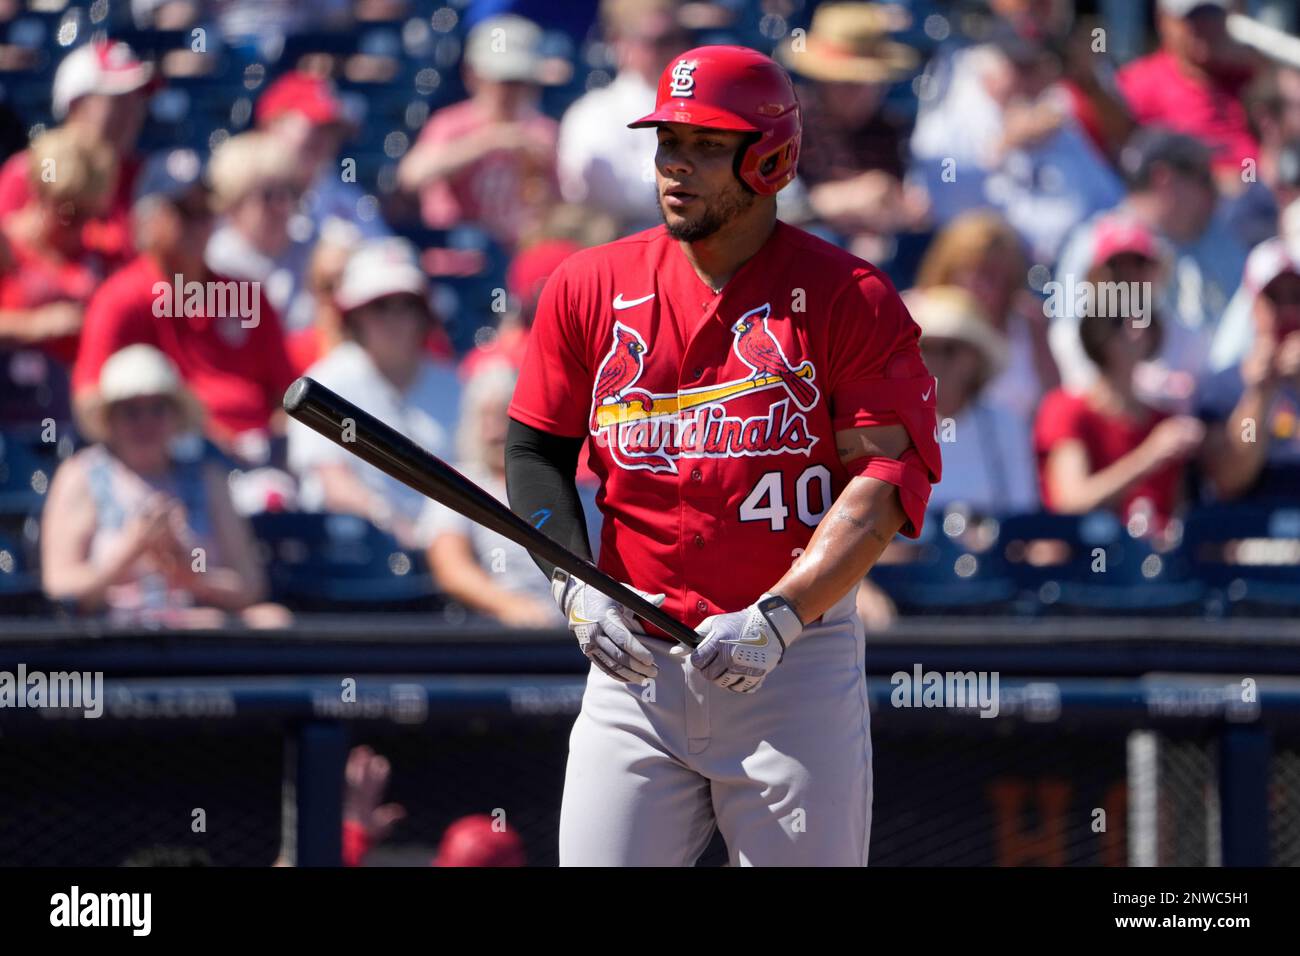 St. Louis Cardinals' Willson Contreras bats during the first